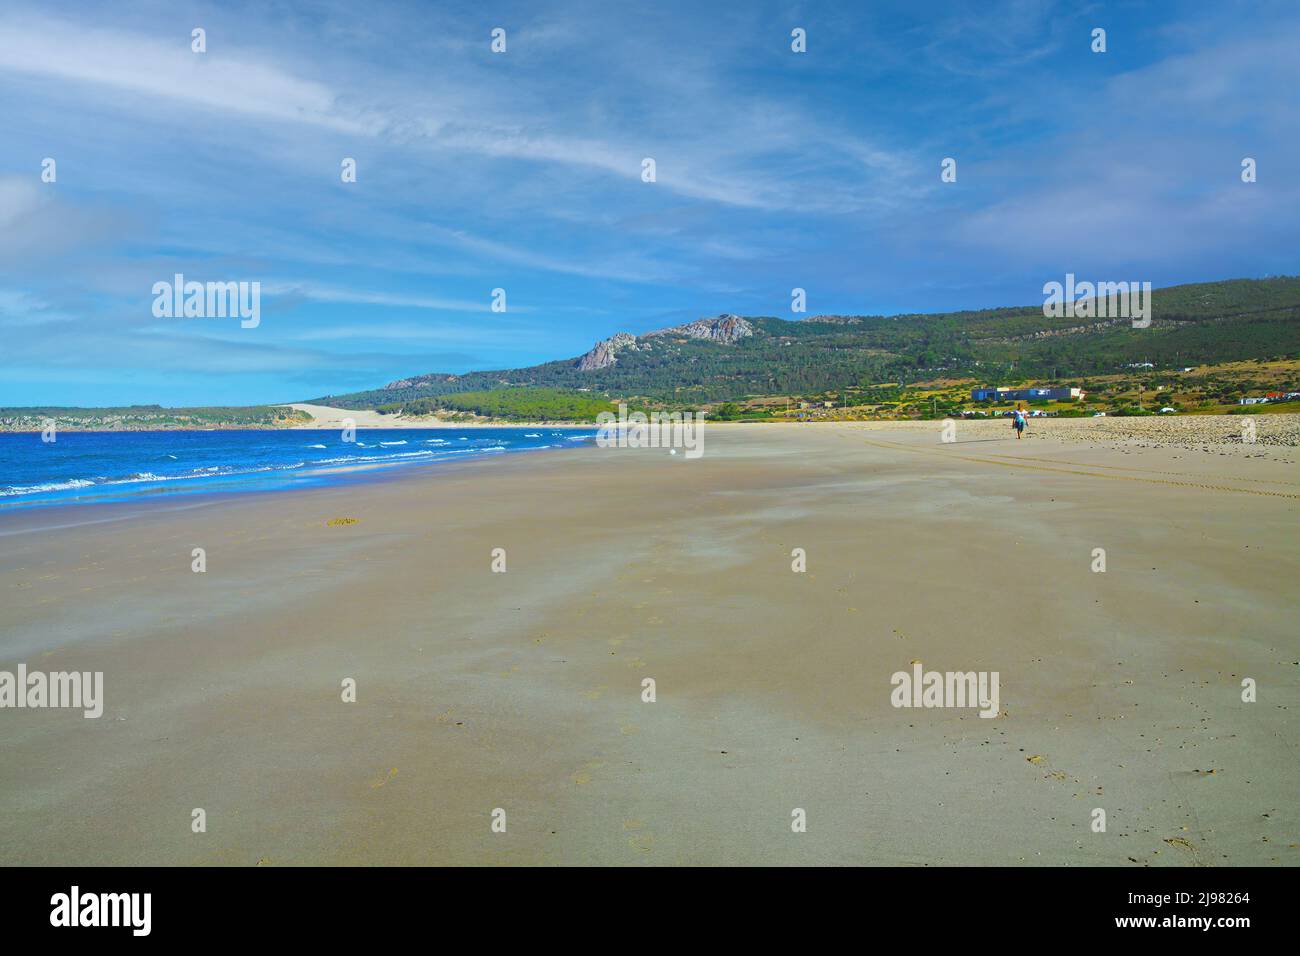 Quiet morning empty beach scene, low tide atlantic sea, green hills - Zahara de los Atunes, Costa de la Luz, Spain Stock Photo